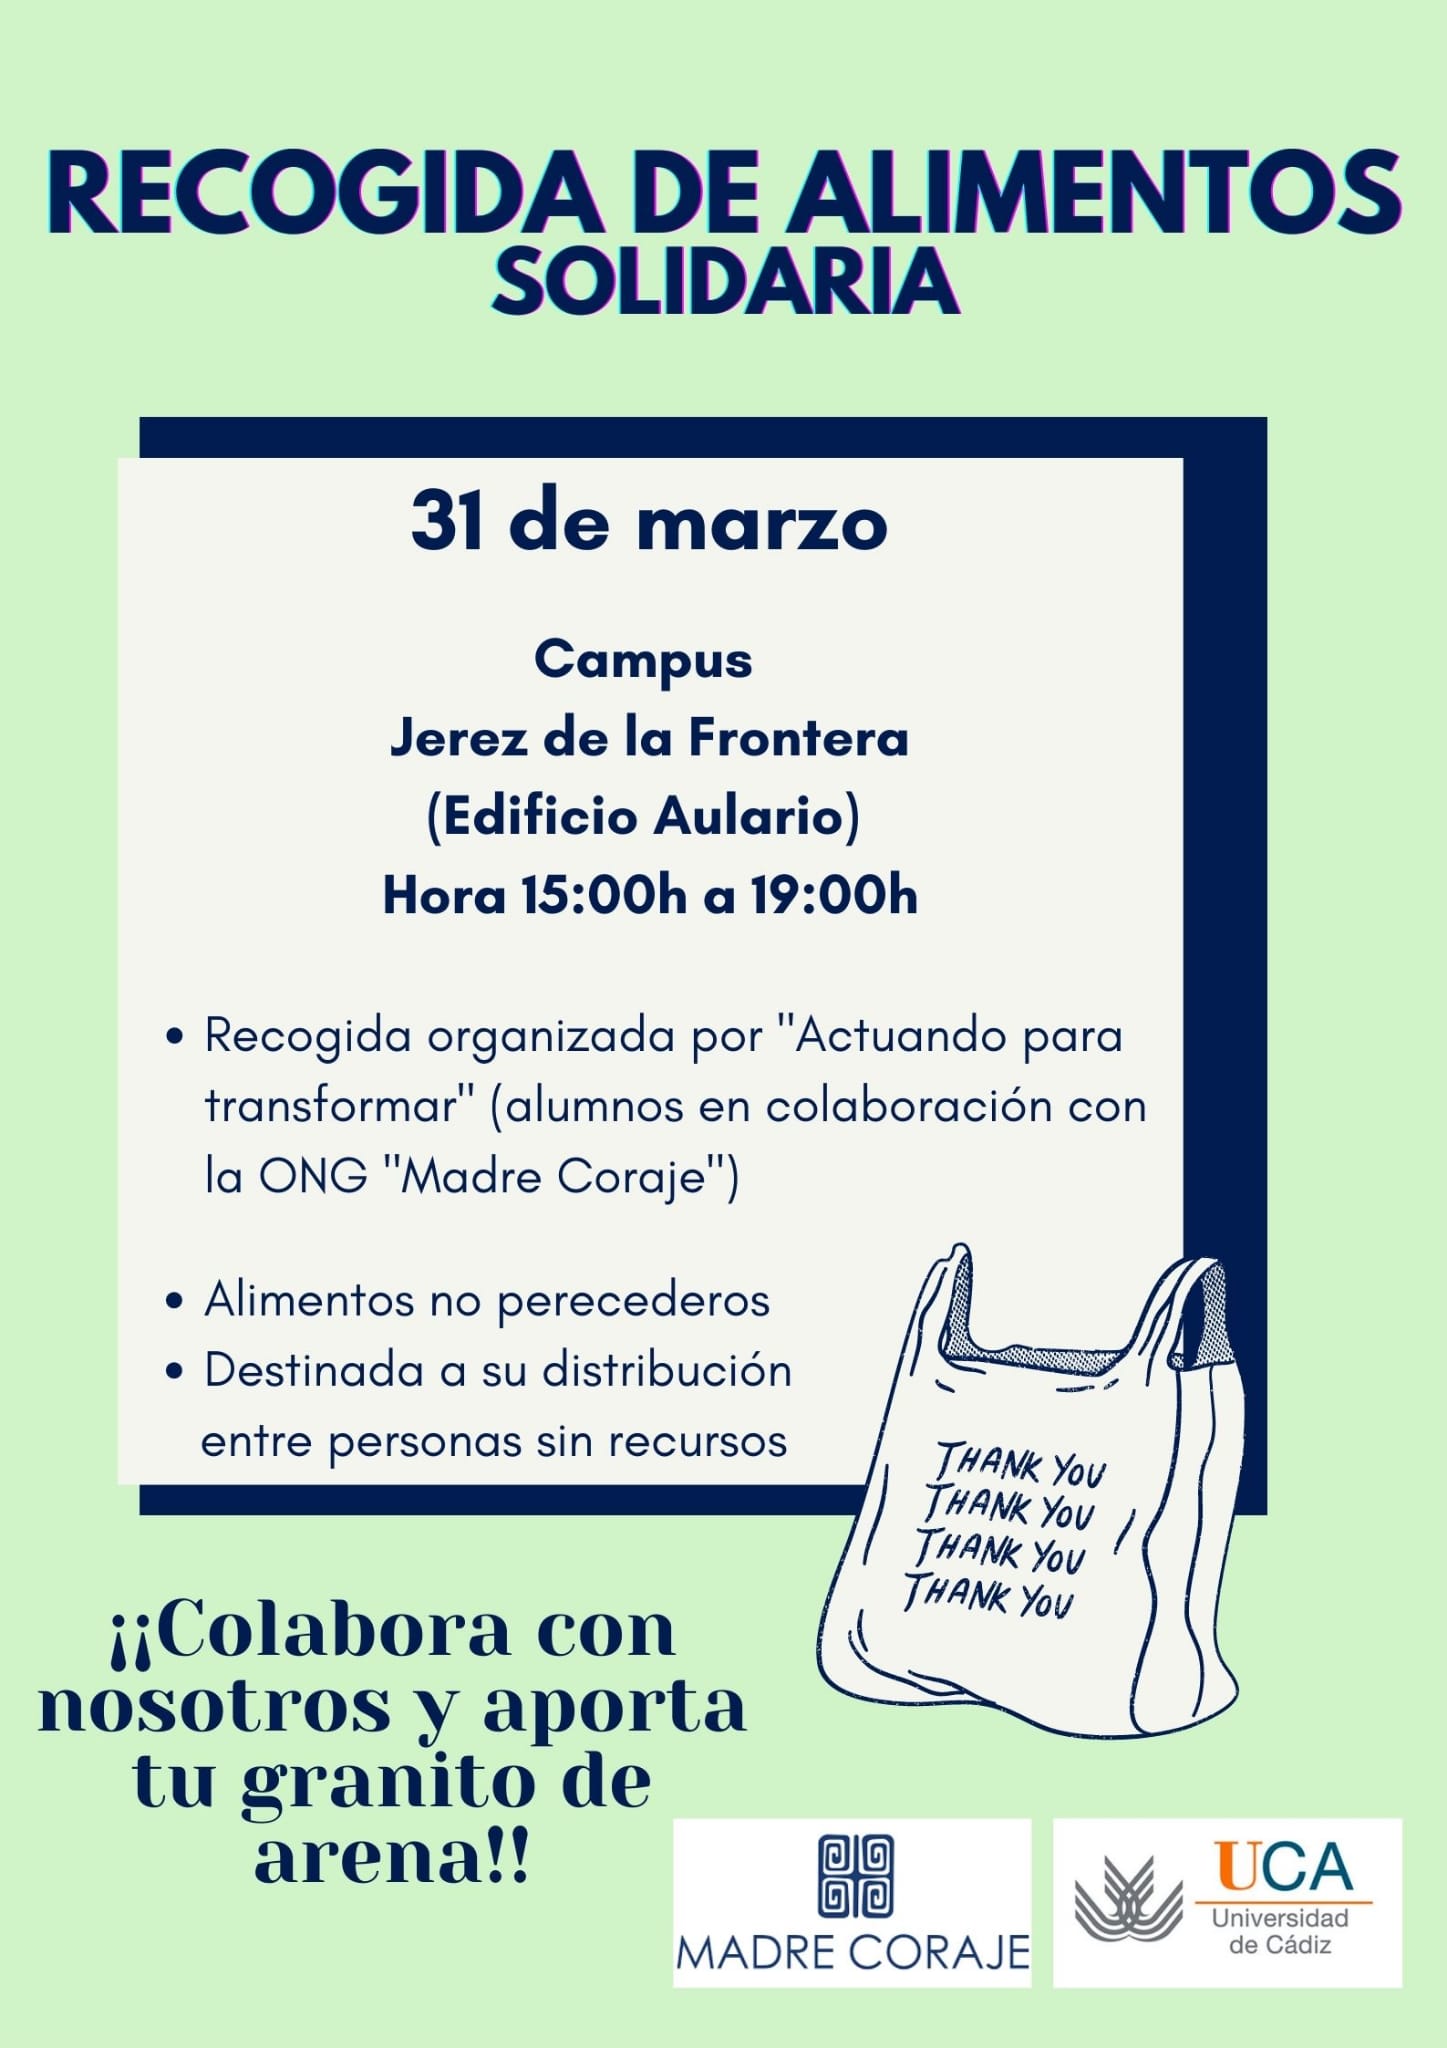 Jueves 31 de marzo. Campus de Jerez. Recogida solidaria de alimentos